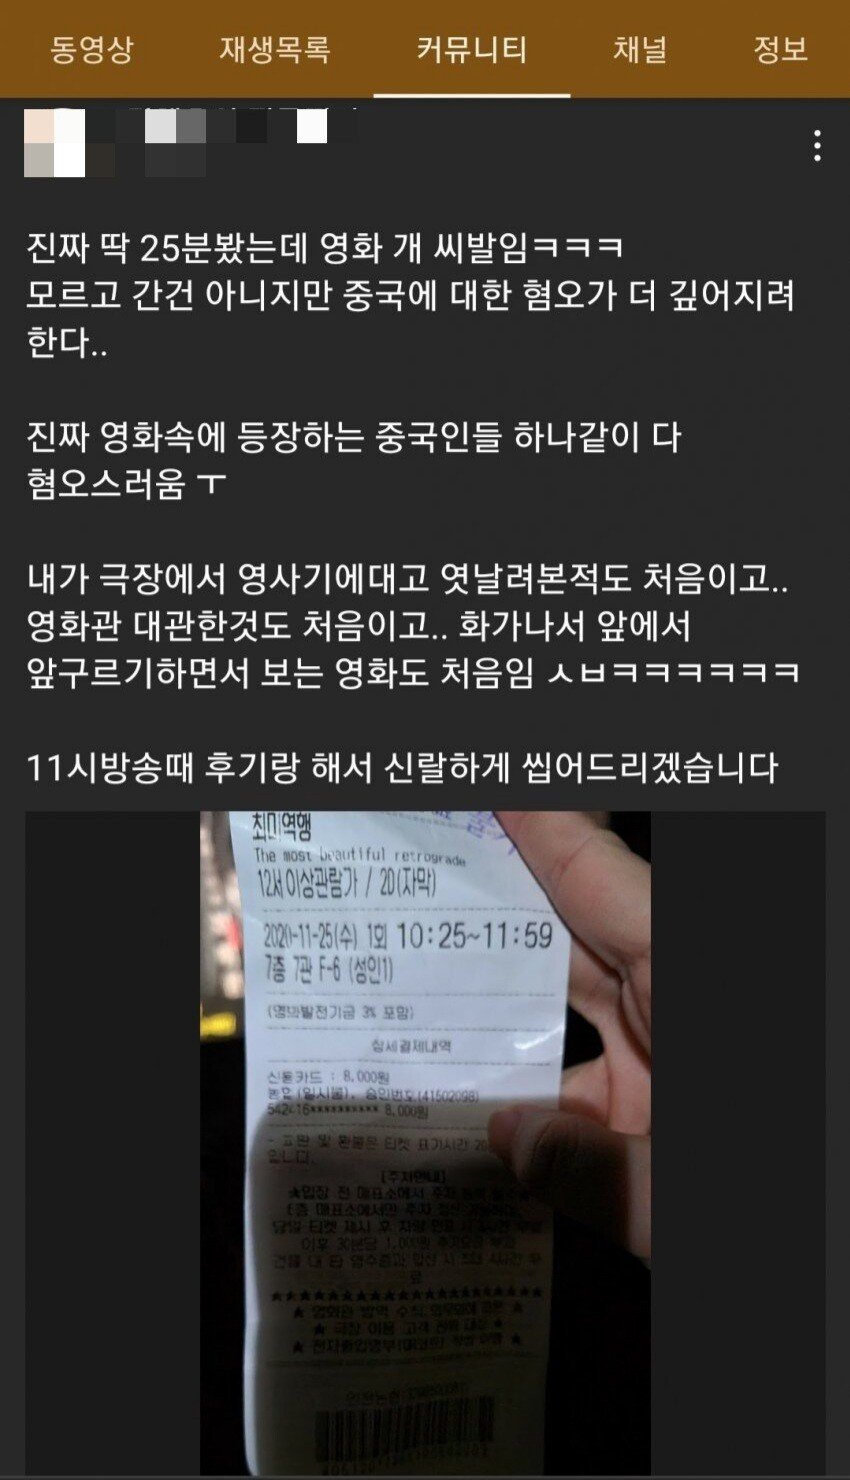 상남자의 중국 코로나 영화 '최미역행' 영화 관람 후기...jpg